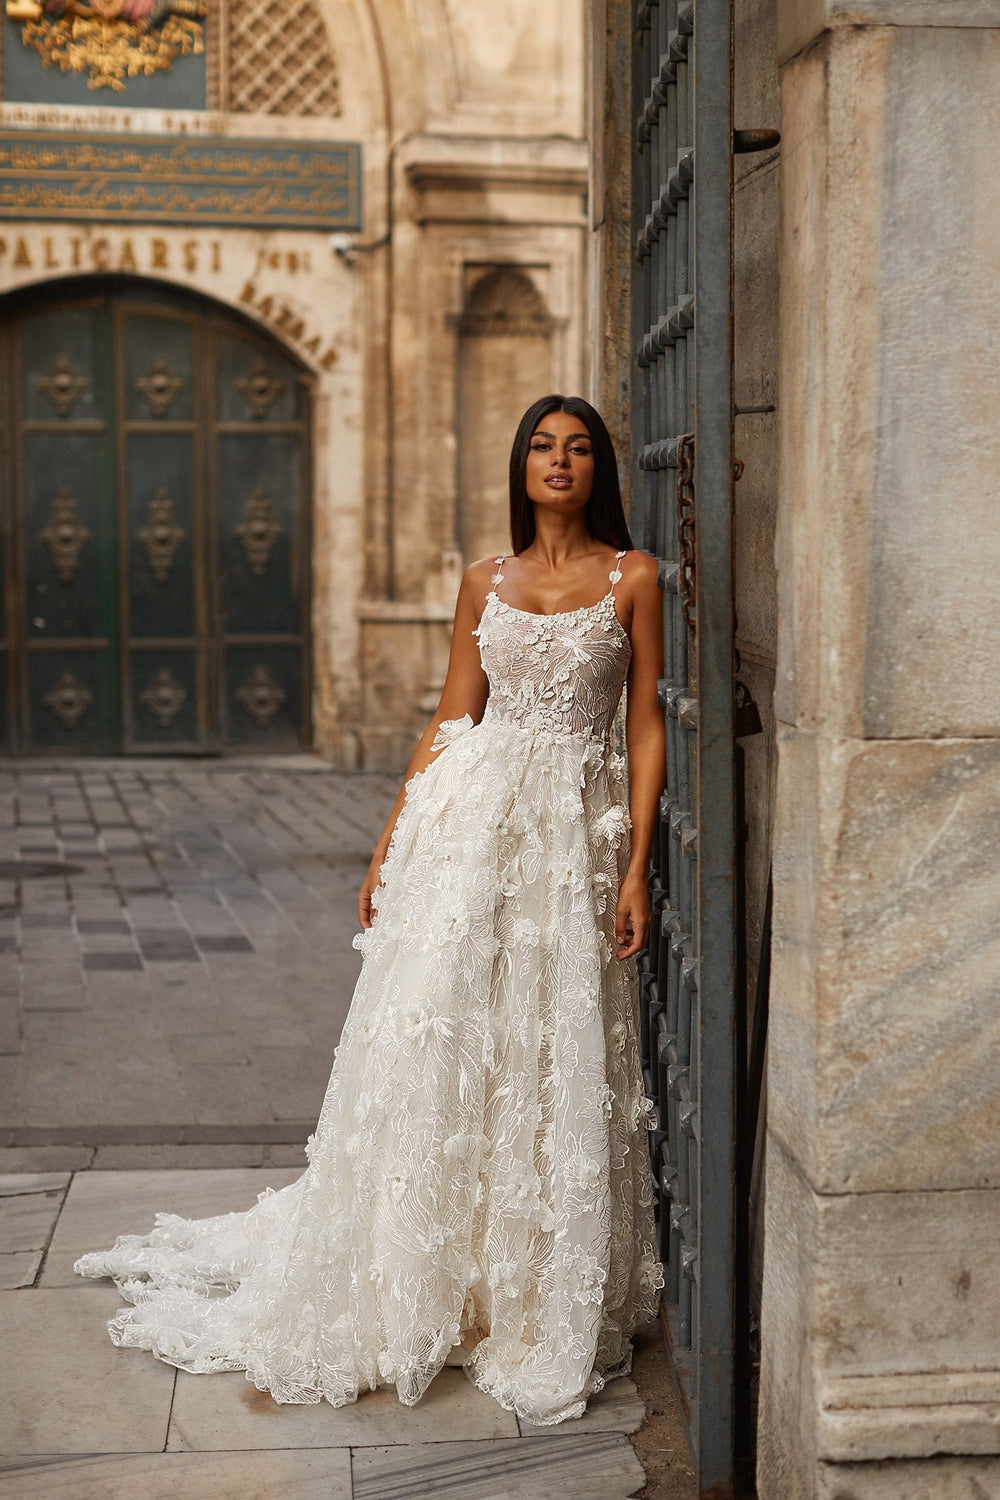 Esen Gown - 3D Floral Bridal Gown with Scoop Neckline